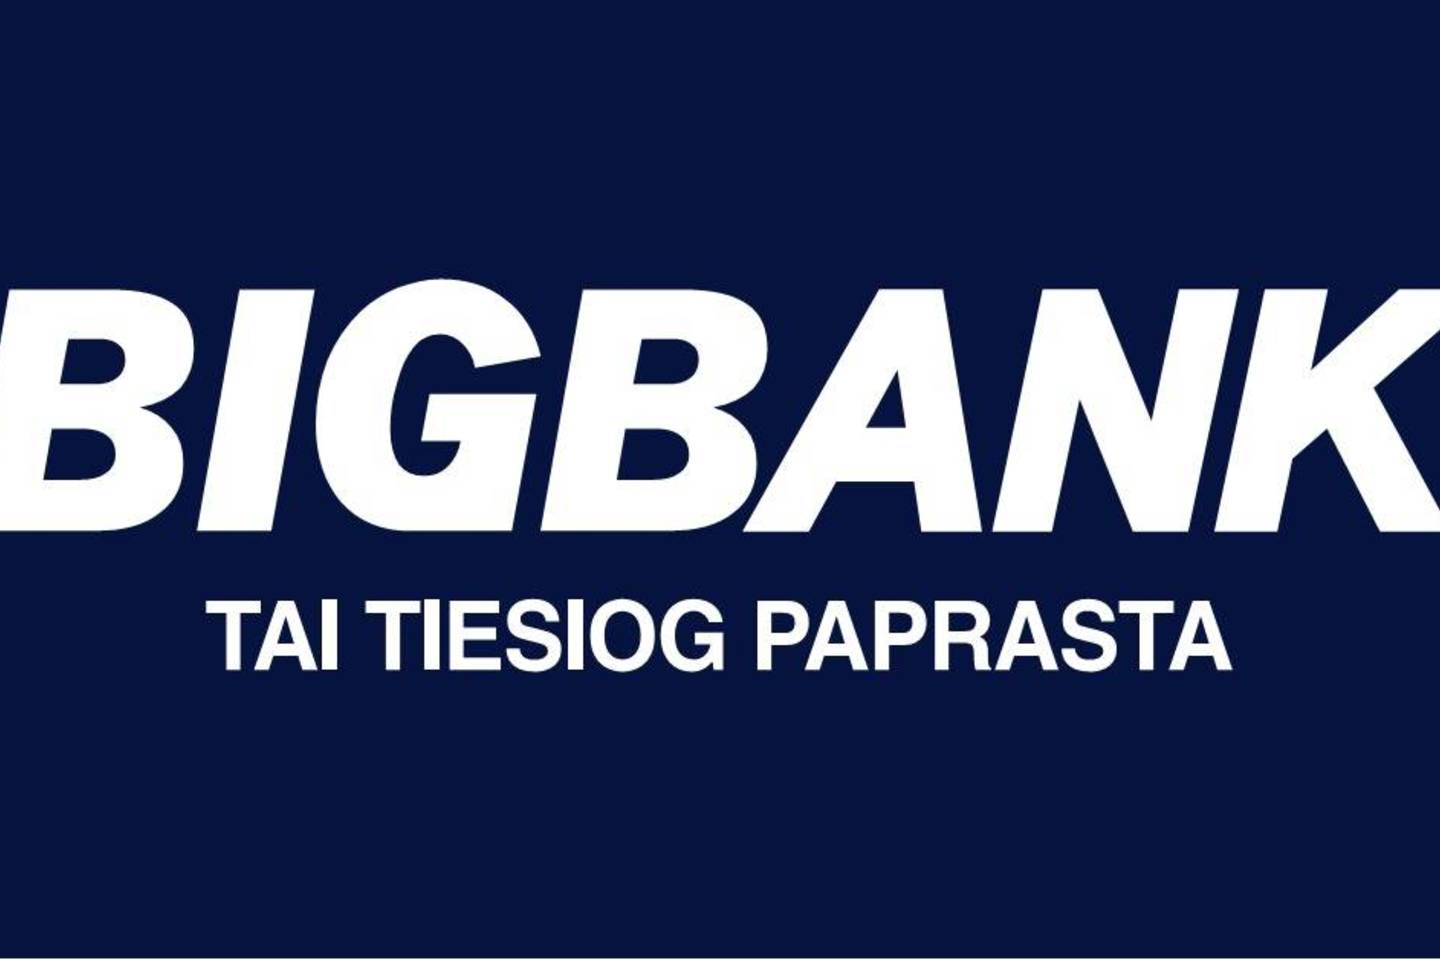 Pasak „Bigbank“ AS Lietuvos filialo vadovo Rolando Norvilo, refinansavimo populiarumo augimą lemia gyventojų noras subalansuoti asmeninį ar šeimos biudžetą.